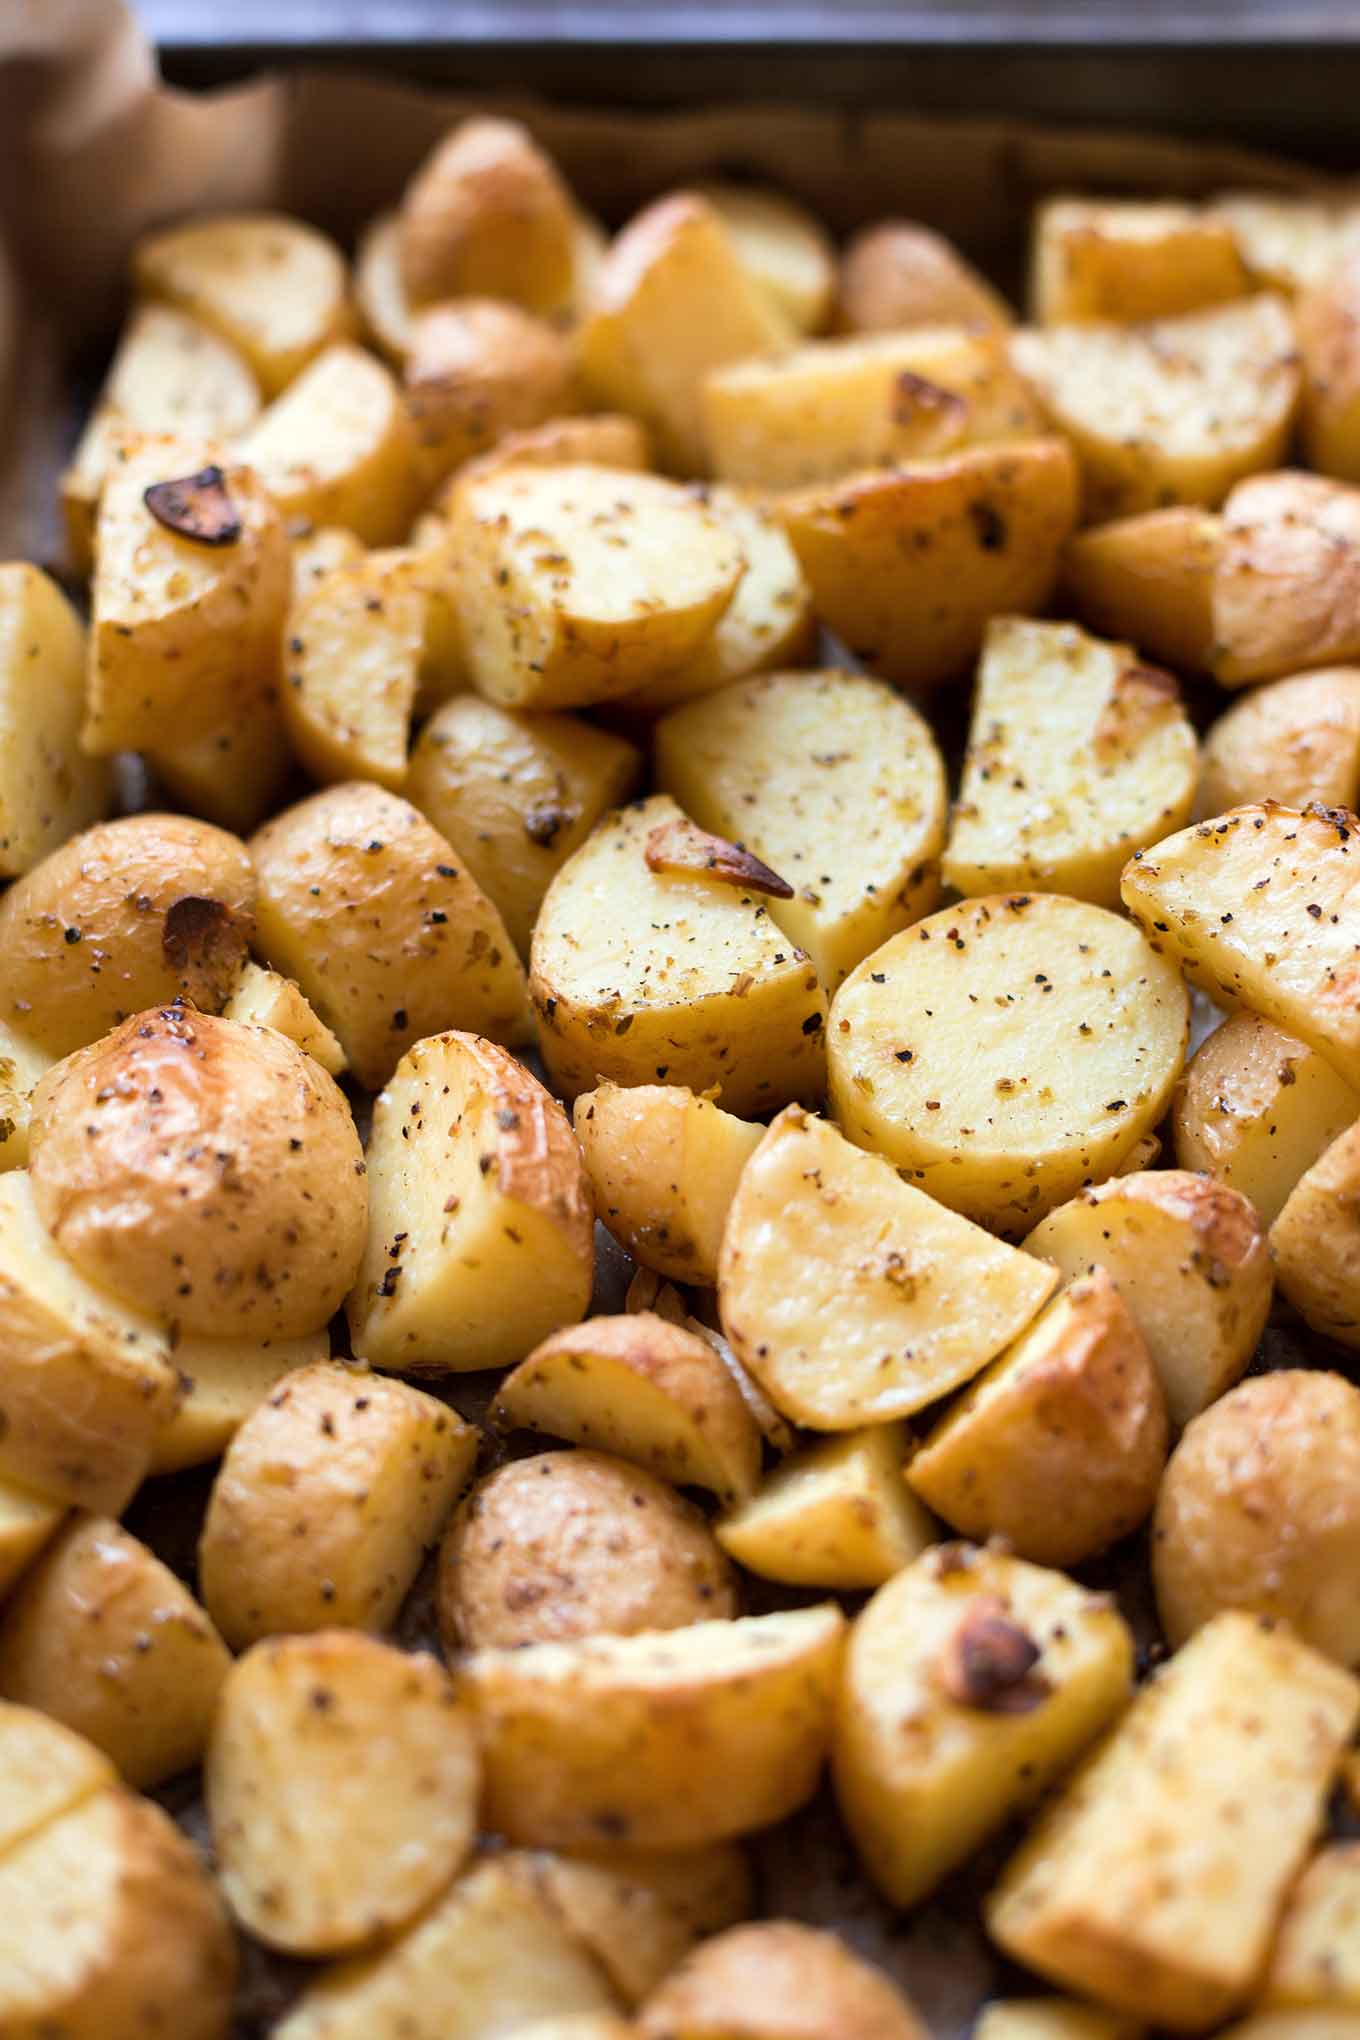 Griechische Ofenkartoffeln mit Joghurt-Feta-Dip. Dieses schnelle Rezept ist super einfach, leicht und SO gut! - Kochkarussell.com #ofenkartoffeln #rezept #sommerrezept #schnellundeinfach #zitrone #dip 